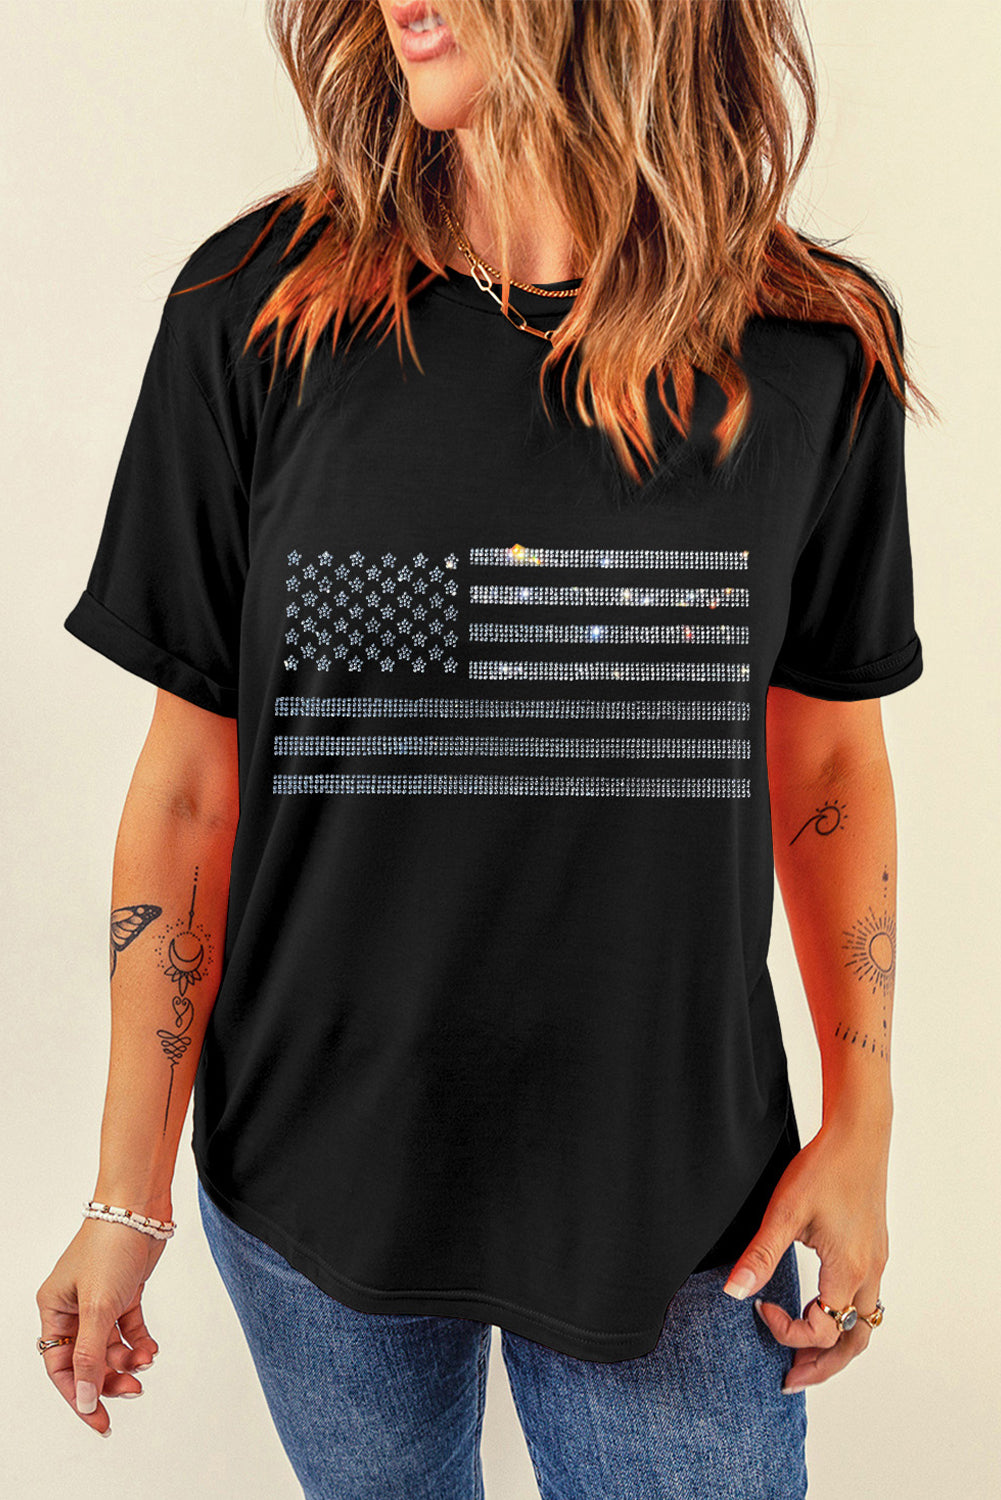 Rhinestone US Flag Round Neck Short Sleeve T-Shirt Black